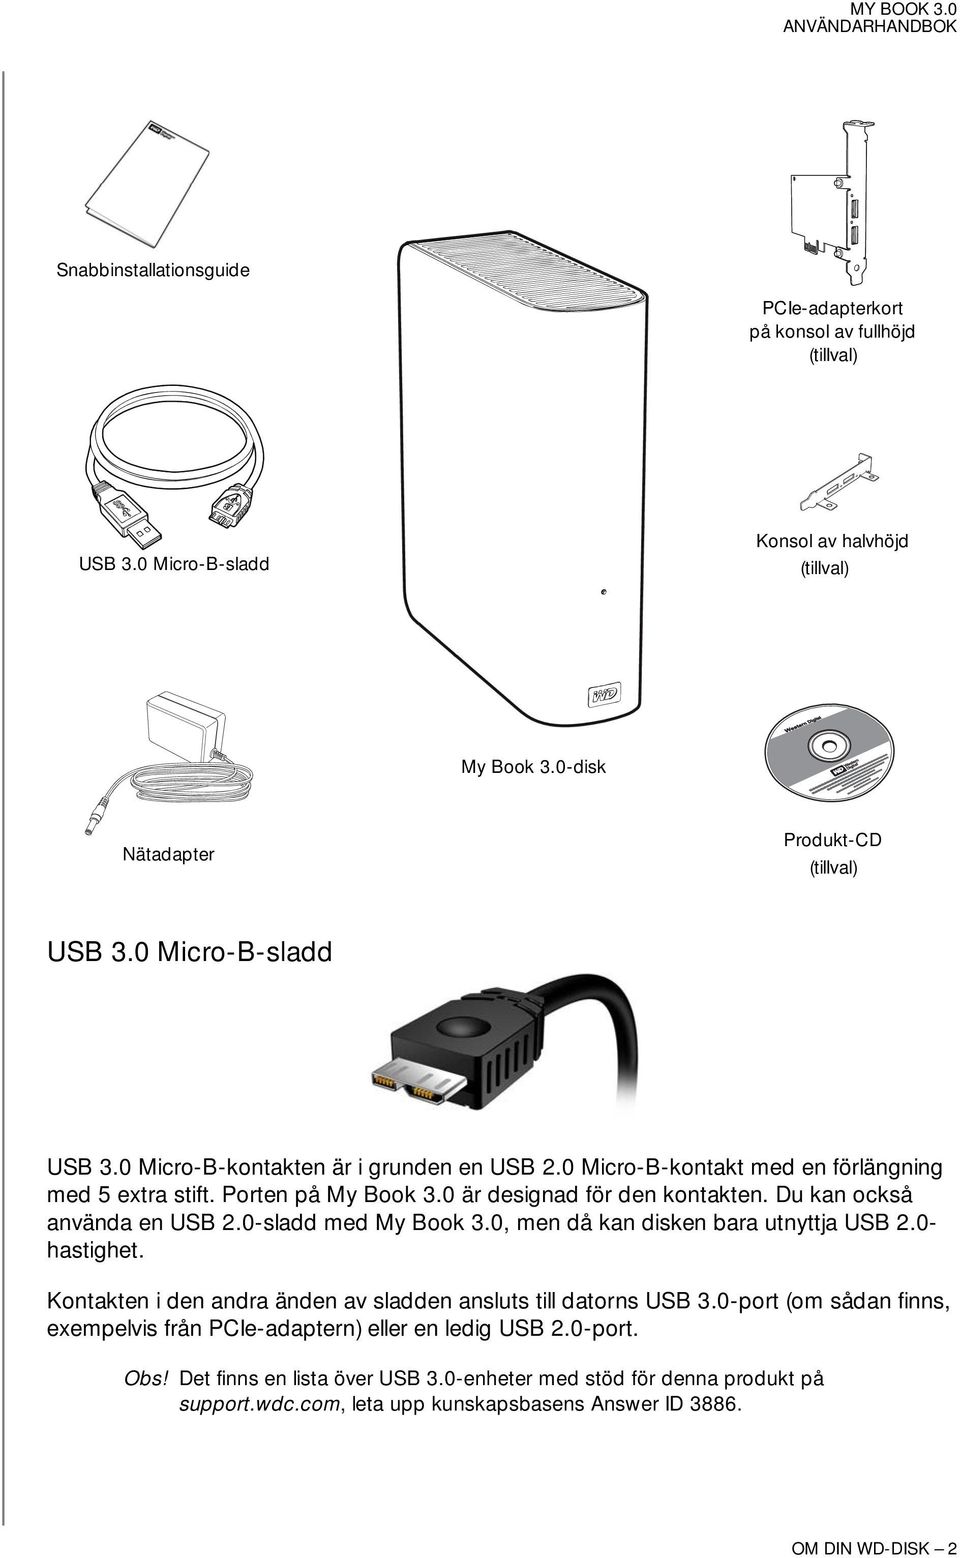 Du kan också använda en USB 2.0-sladd med My Book 3.0, men då kan disken bara utnyttja USB 2.0- hastighet. Kontakten i den andra änden av sladden ansluts till datorns USB 3.